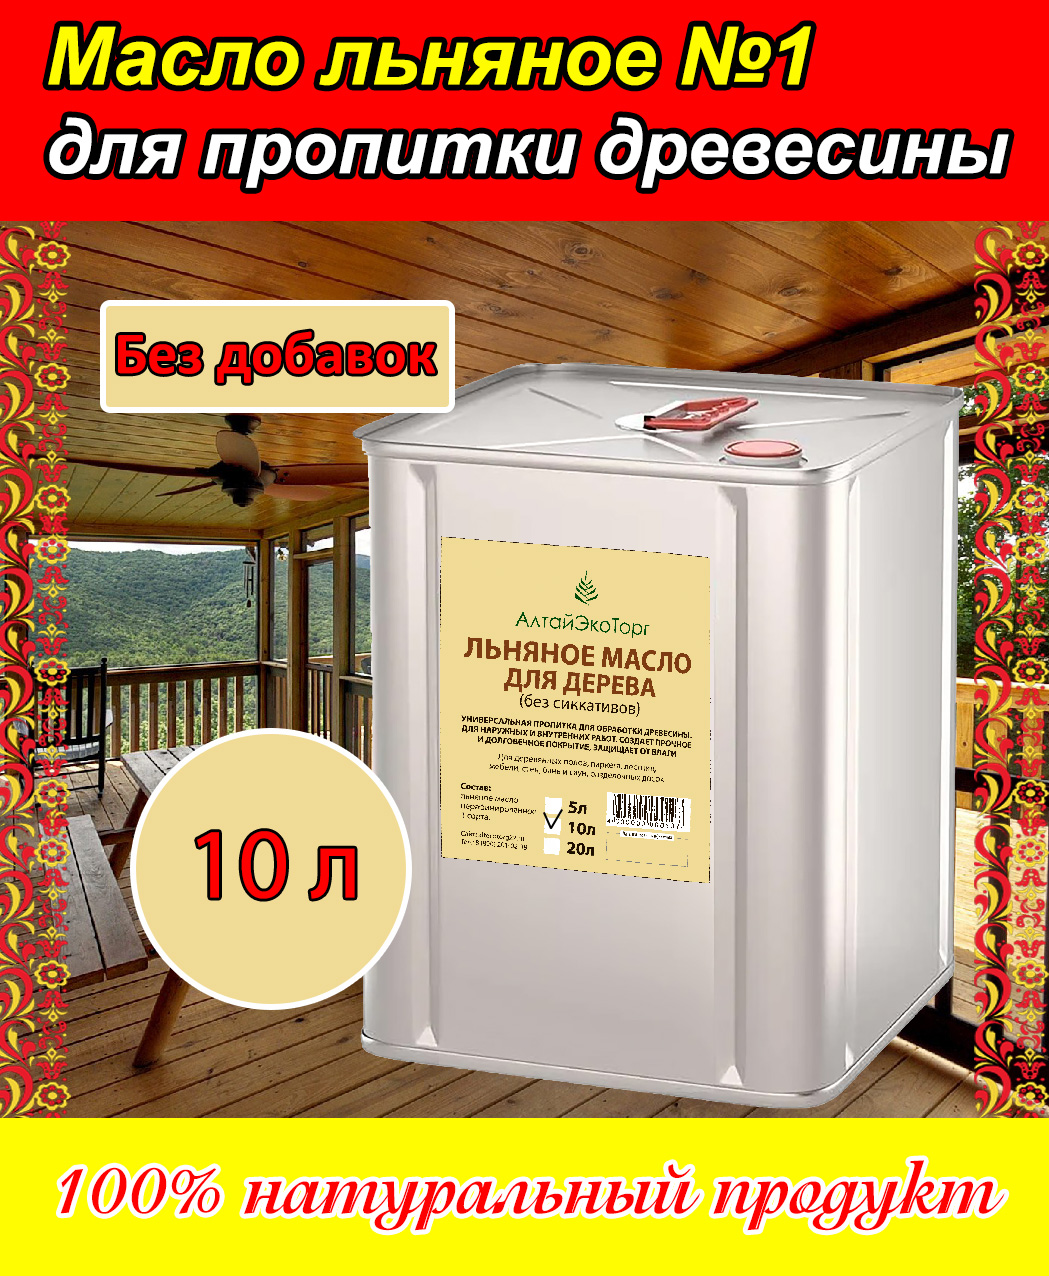 Масло льняное АлтайЭкоТорг для пропитки древесины, 10 литров